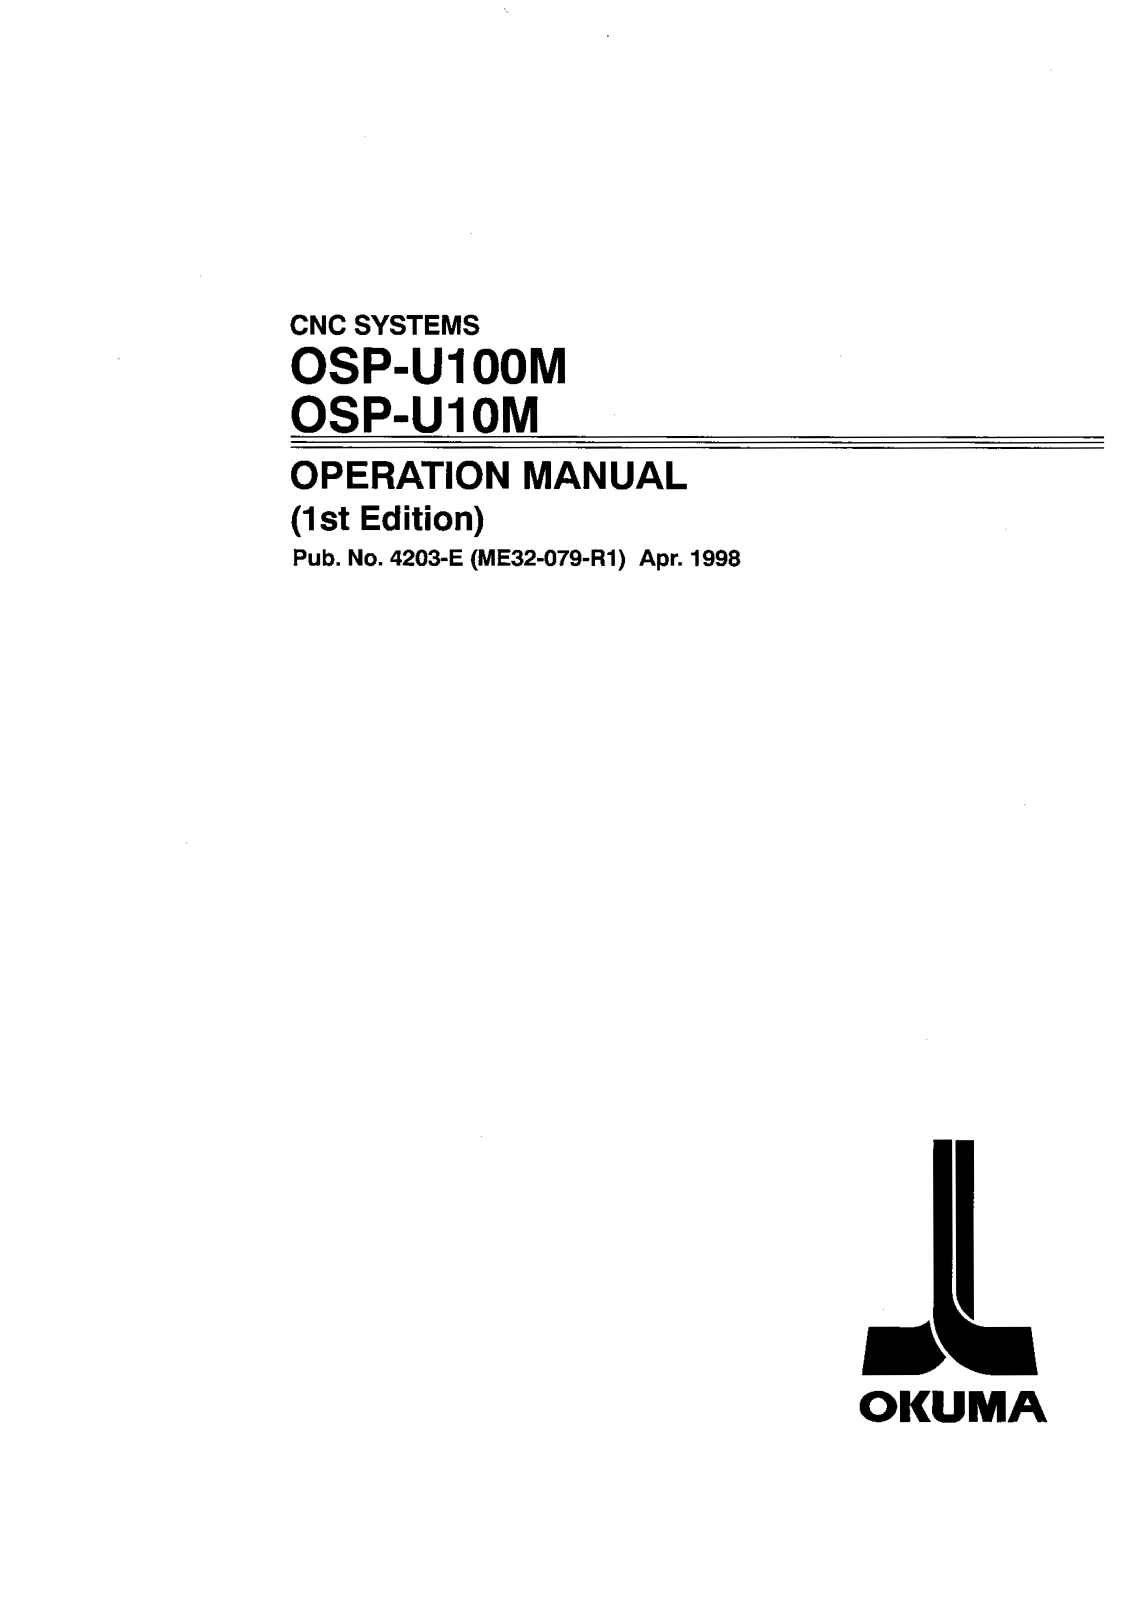 okuma OSP-U100M, OSP-U10M Operation Manual